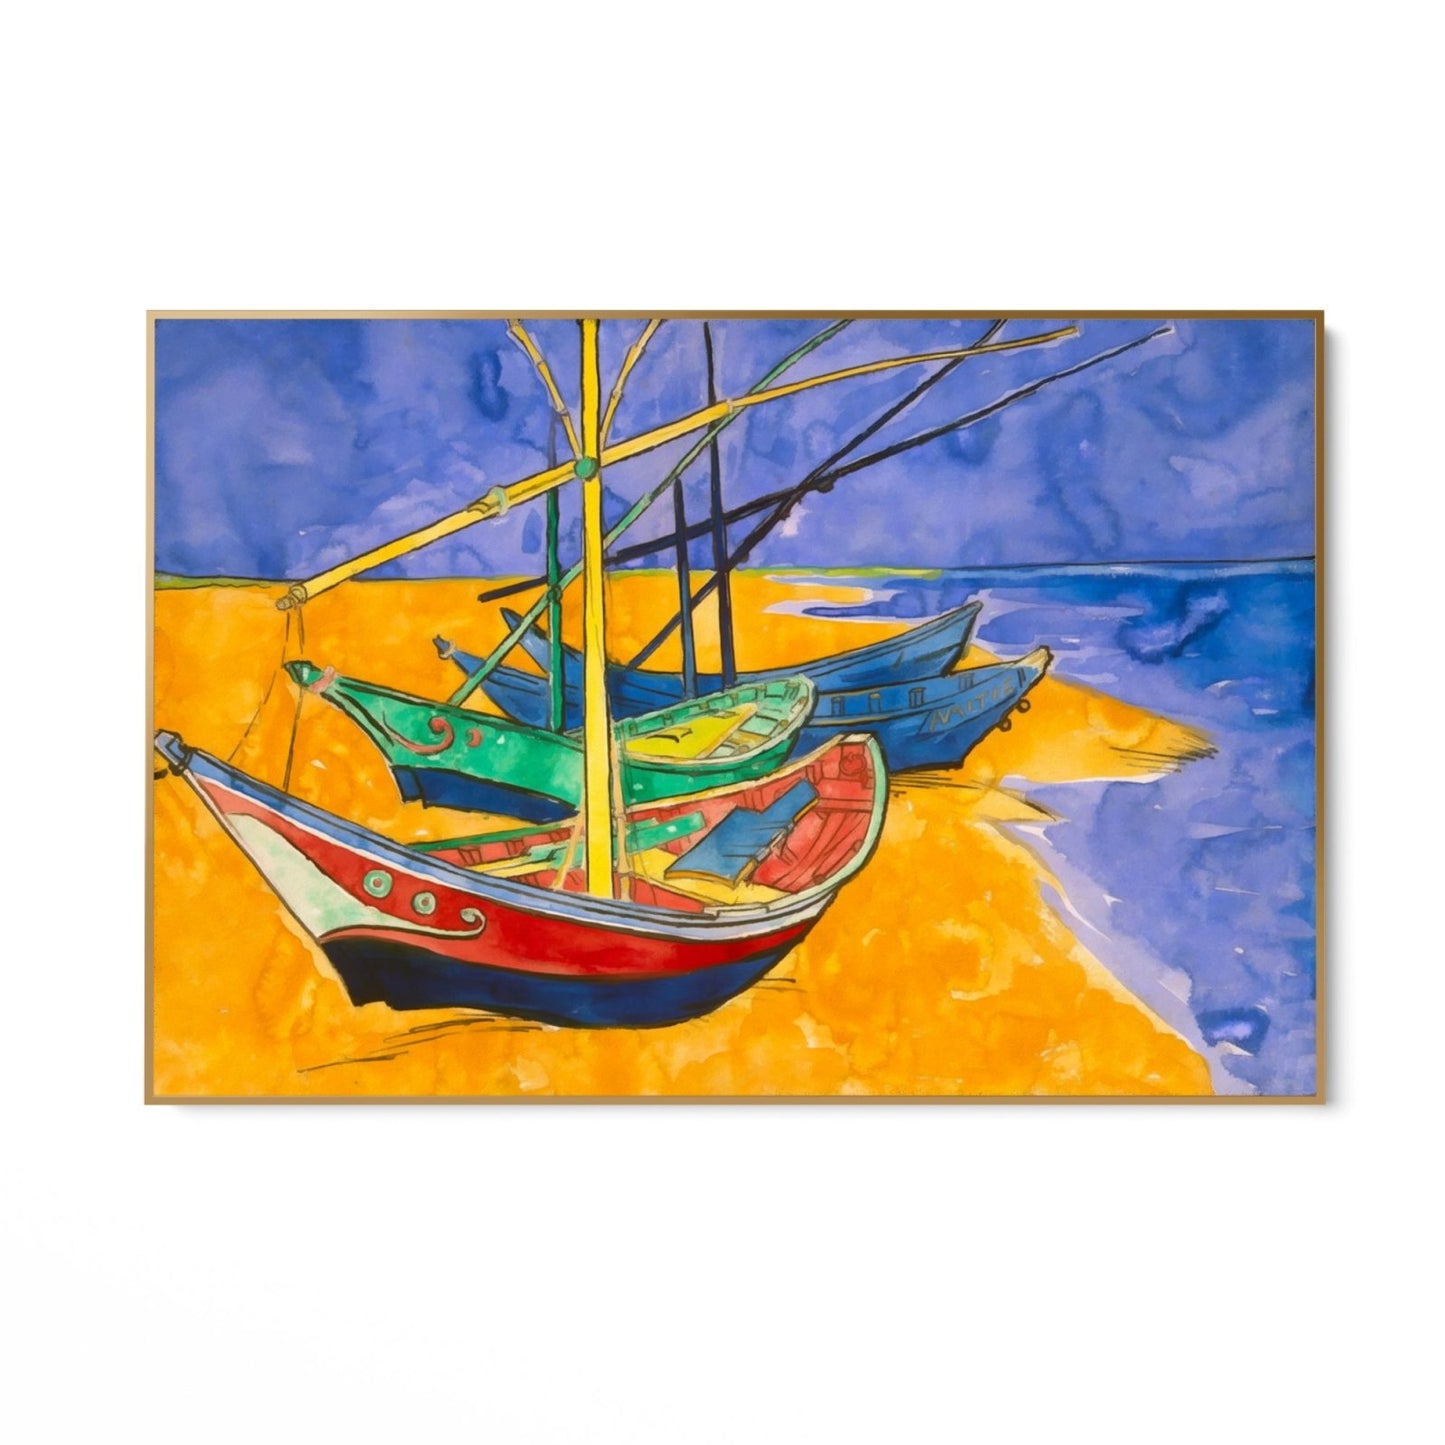 Fiskebåtar på stranden I, Vincent Van Gogh